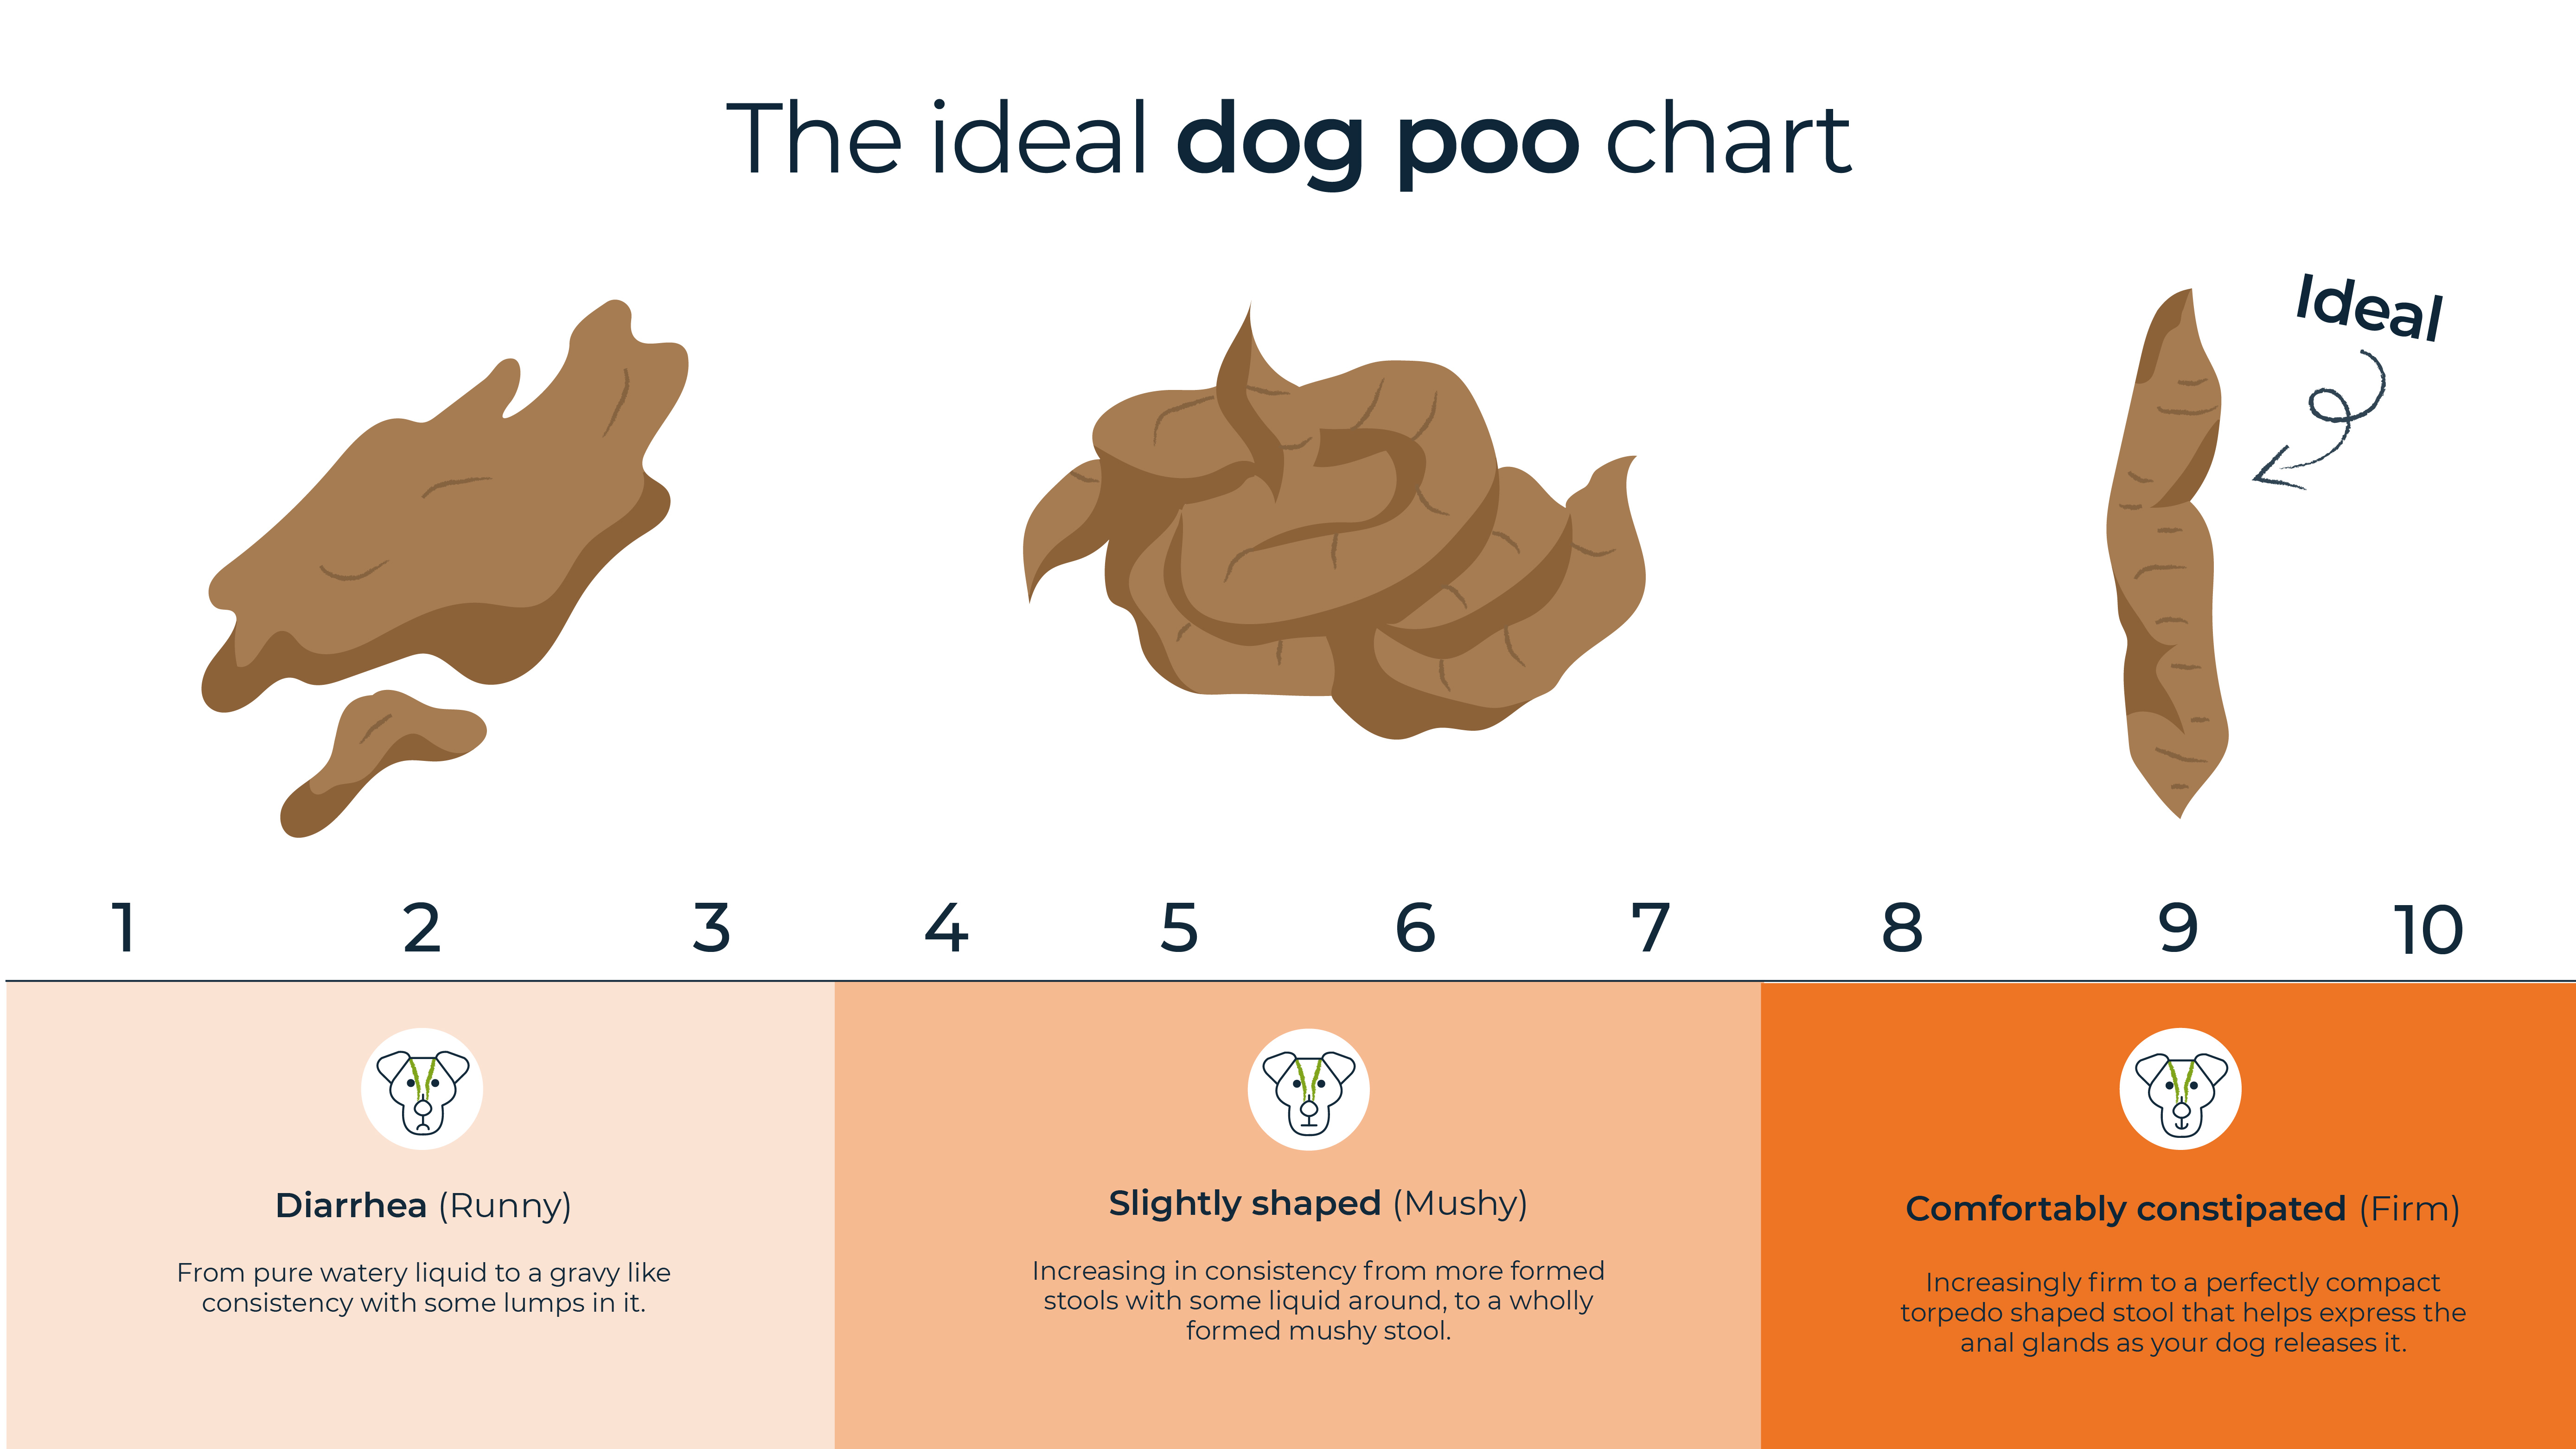 raw food diet dog poop